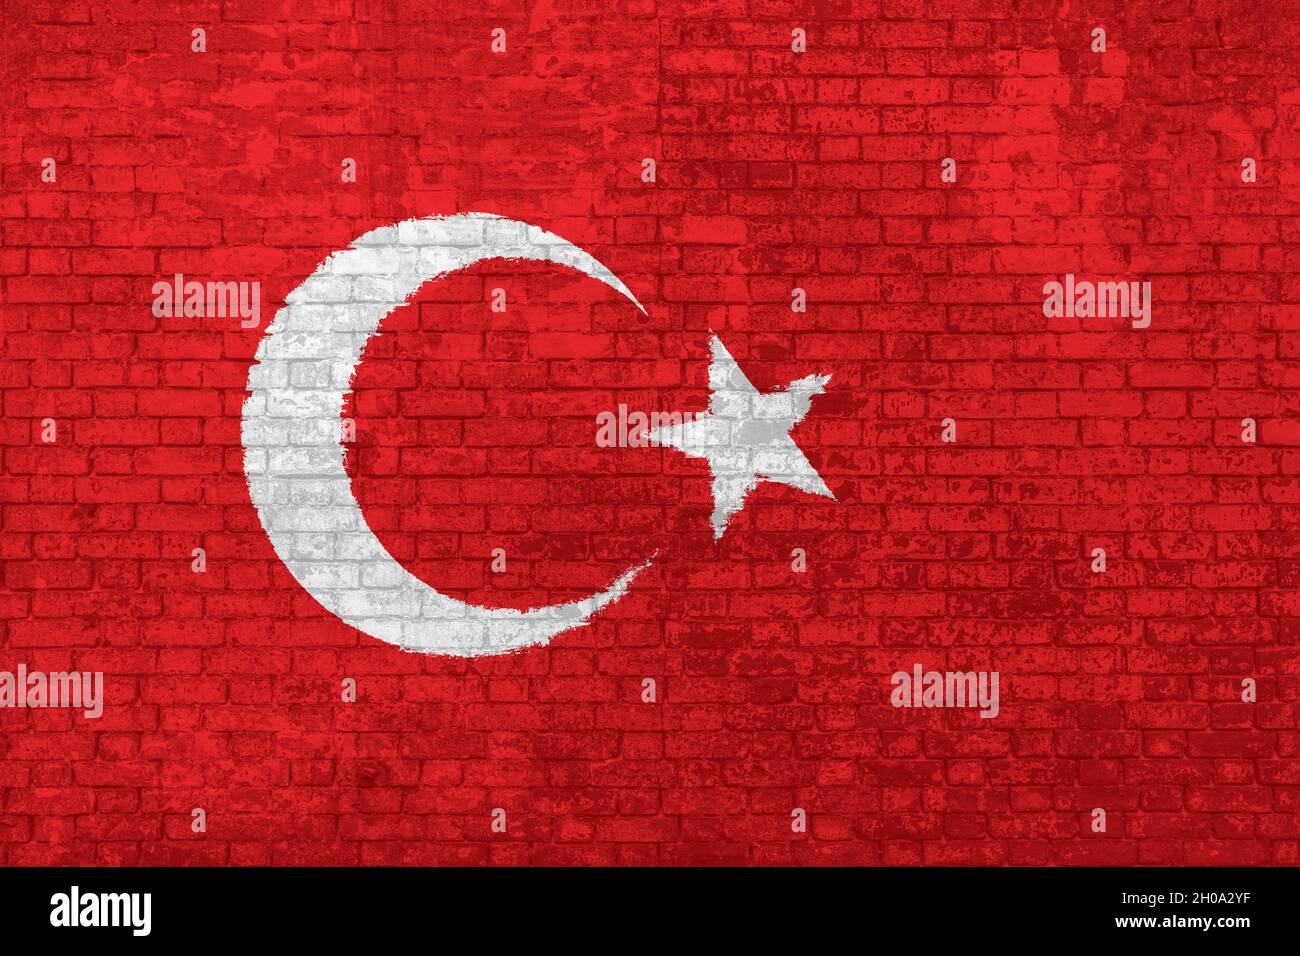 Mur de briques peint avec le drapeau national plat de la Turquie. Couleur rouge avec étoile et demi-lune, fond 3D.Concept de barrières sociales de Banque D'Images